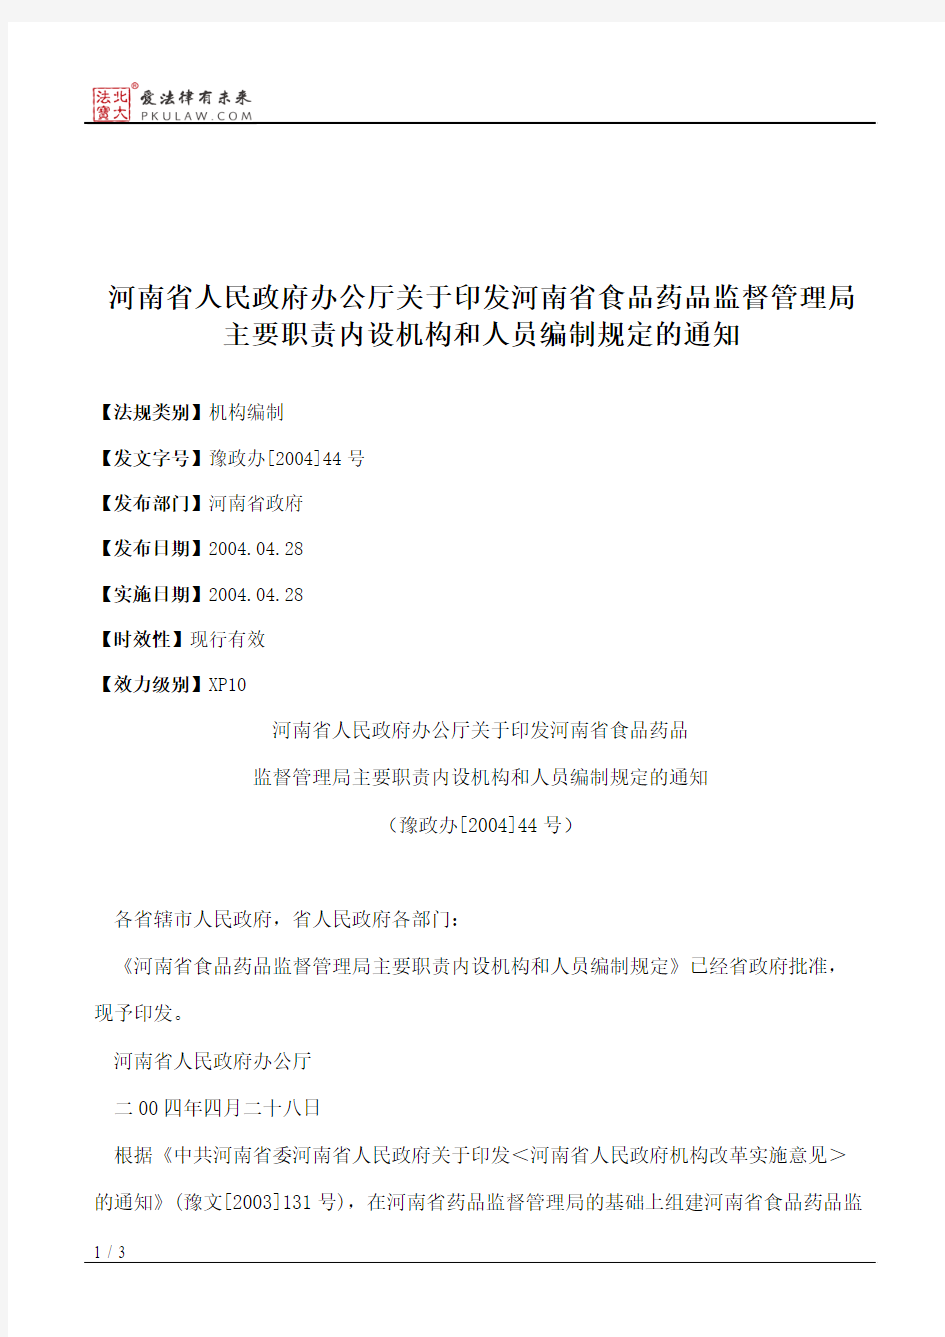 河南省人民政府办公厅关于印发河南省食品药品监督管理局主要职责